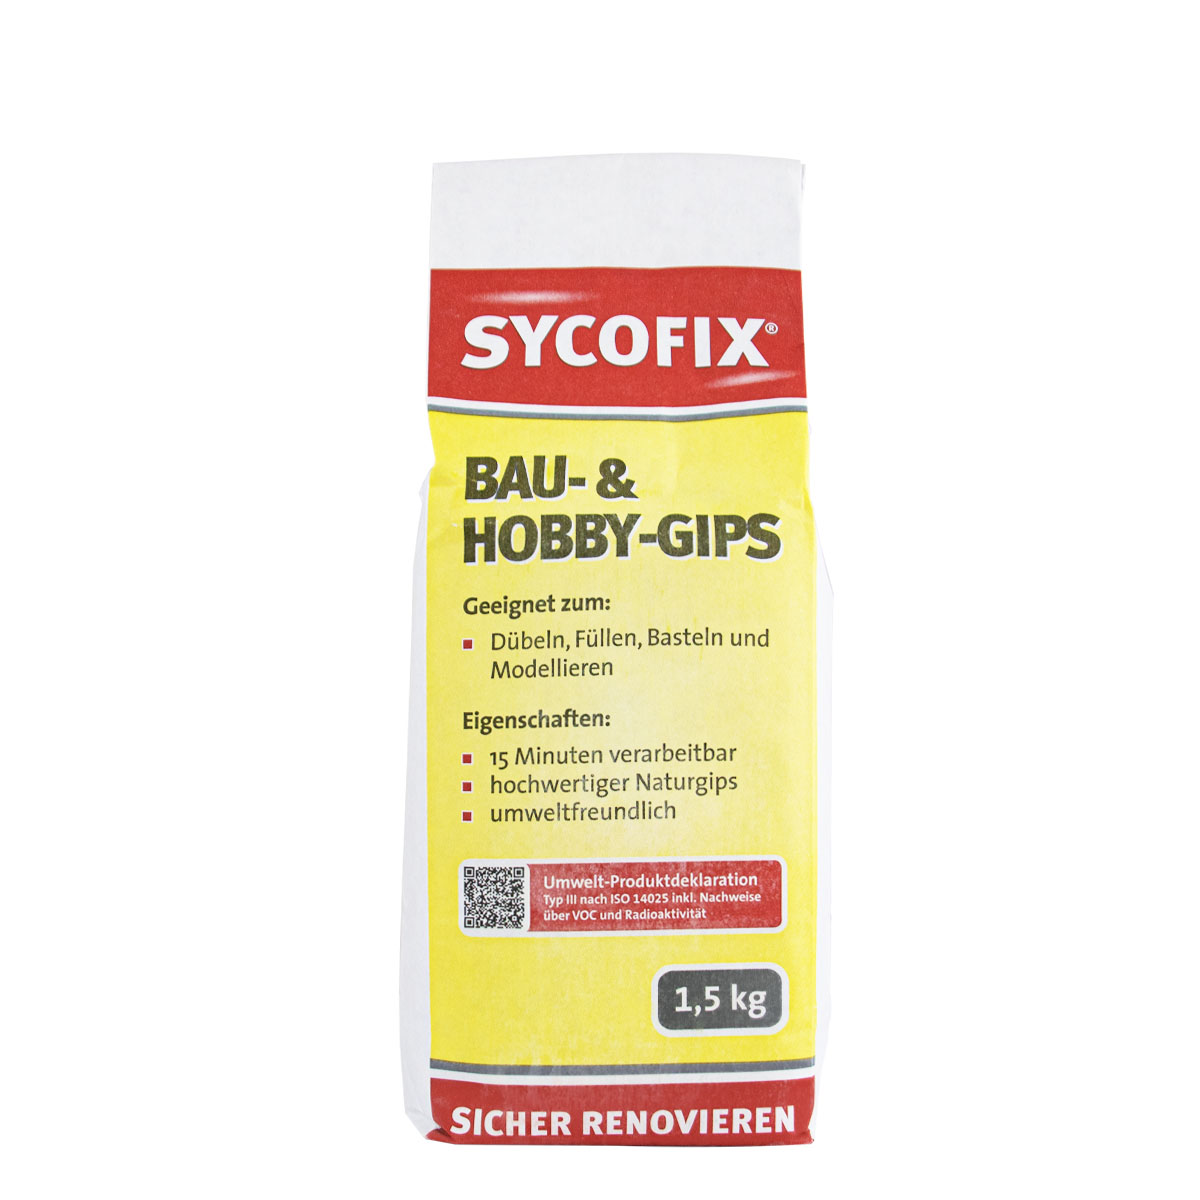 sycofix_bau-und-hobbygips_1,5kg_gross